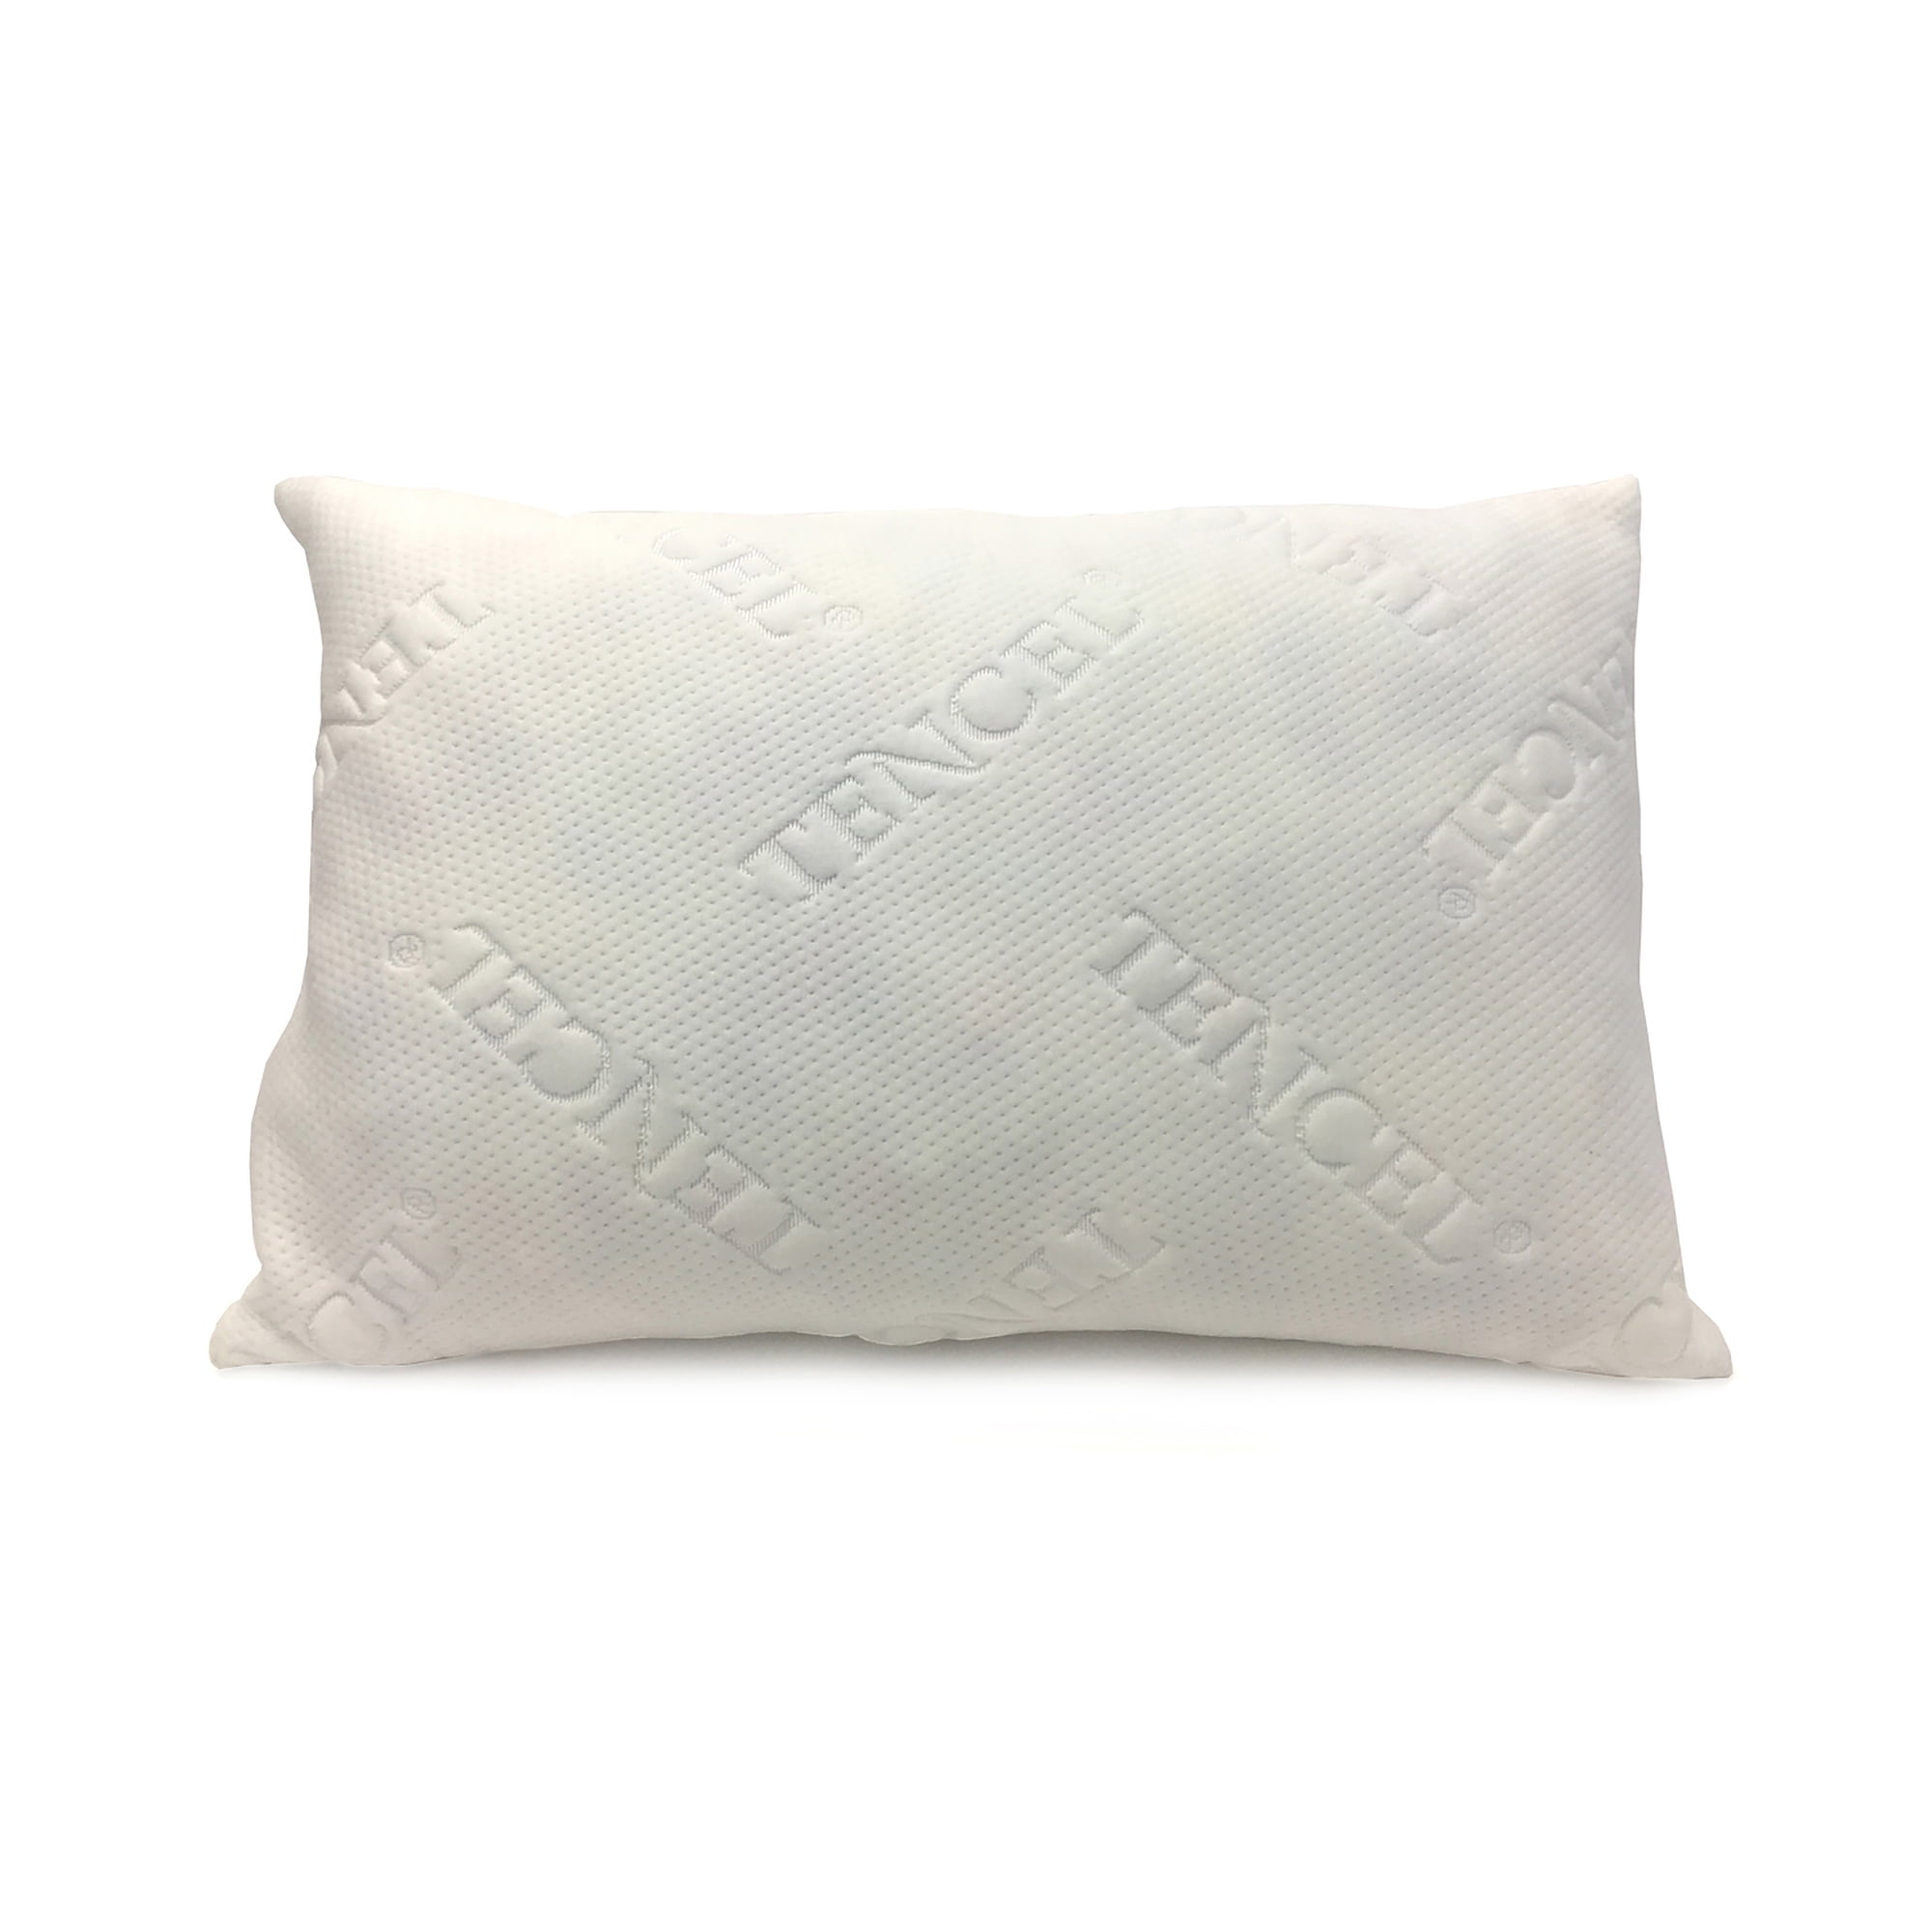 5 Benefits of Sleeping on a Shredded Memory Foam Pillow – City Mattress